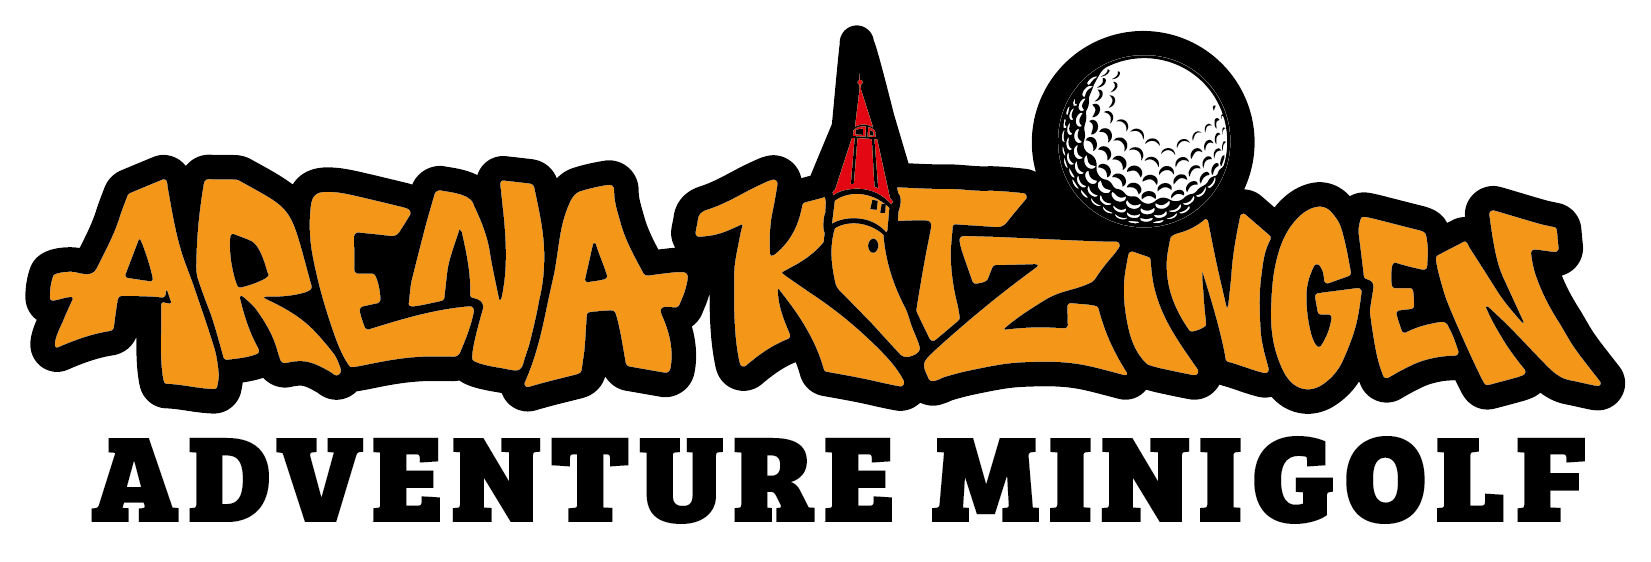 Kitzingen Minigolf Adventure Campus Innopark –